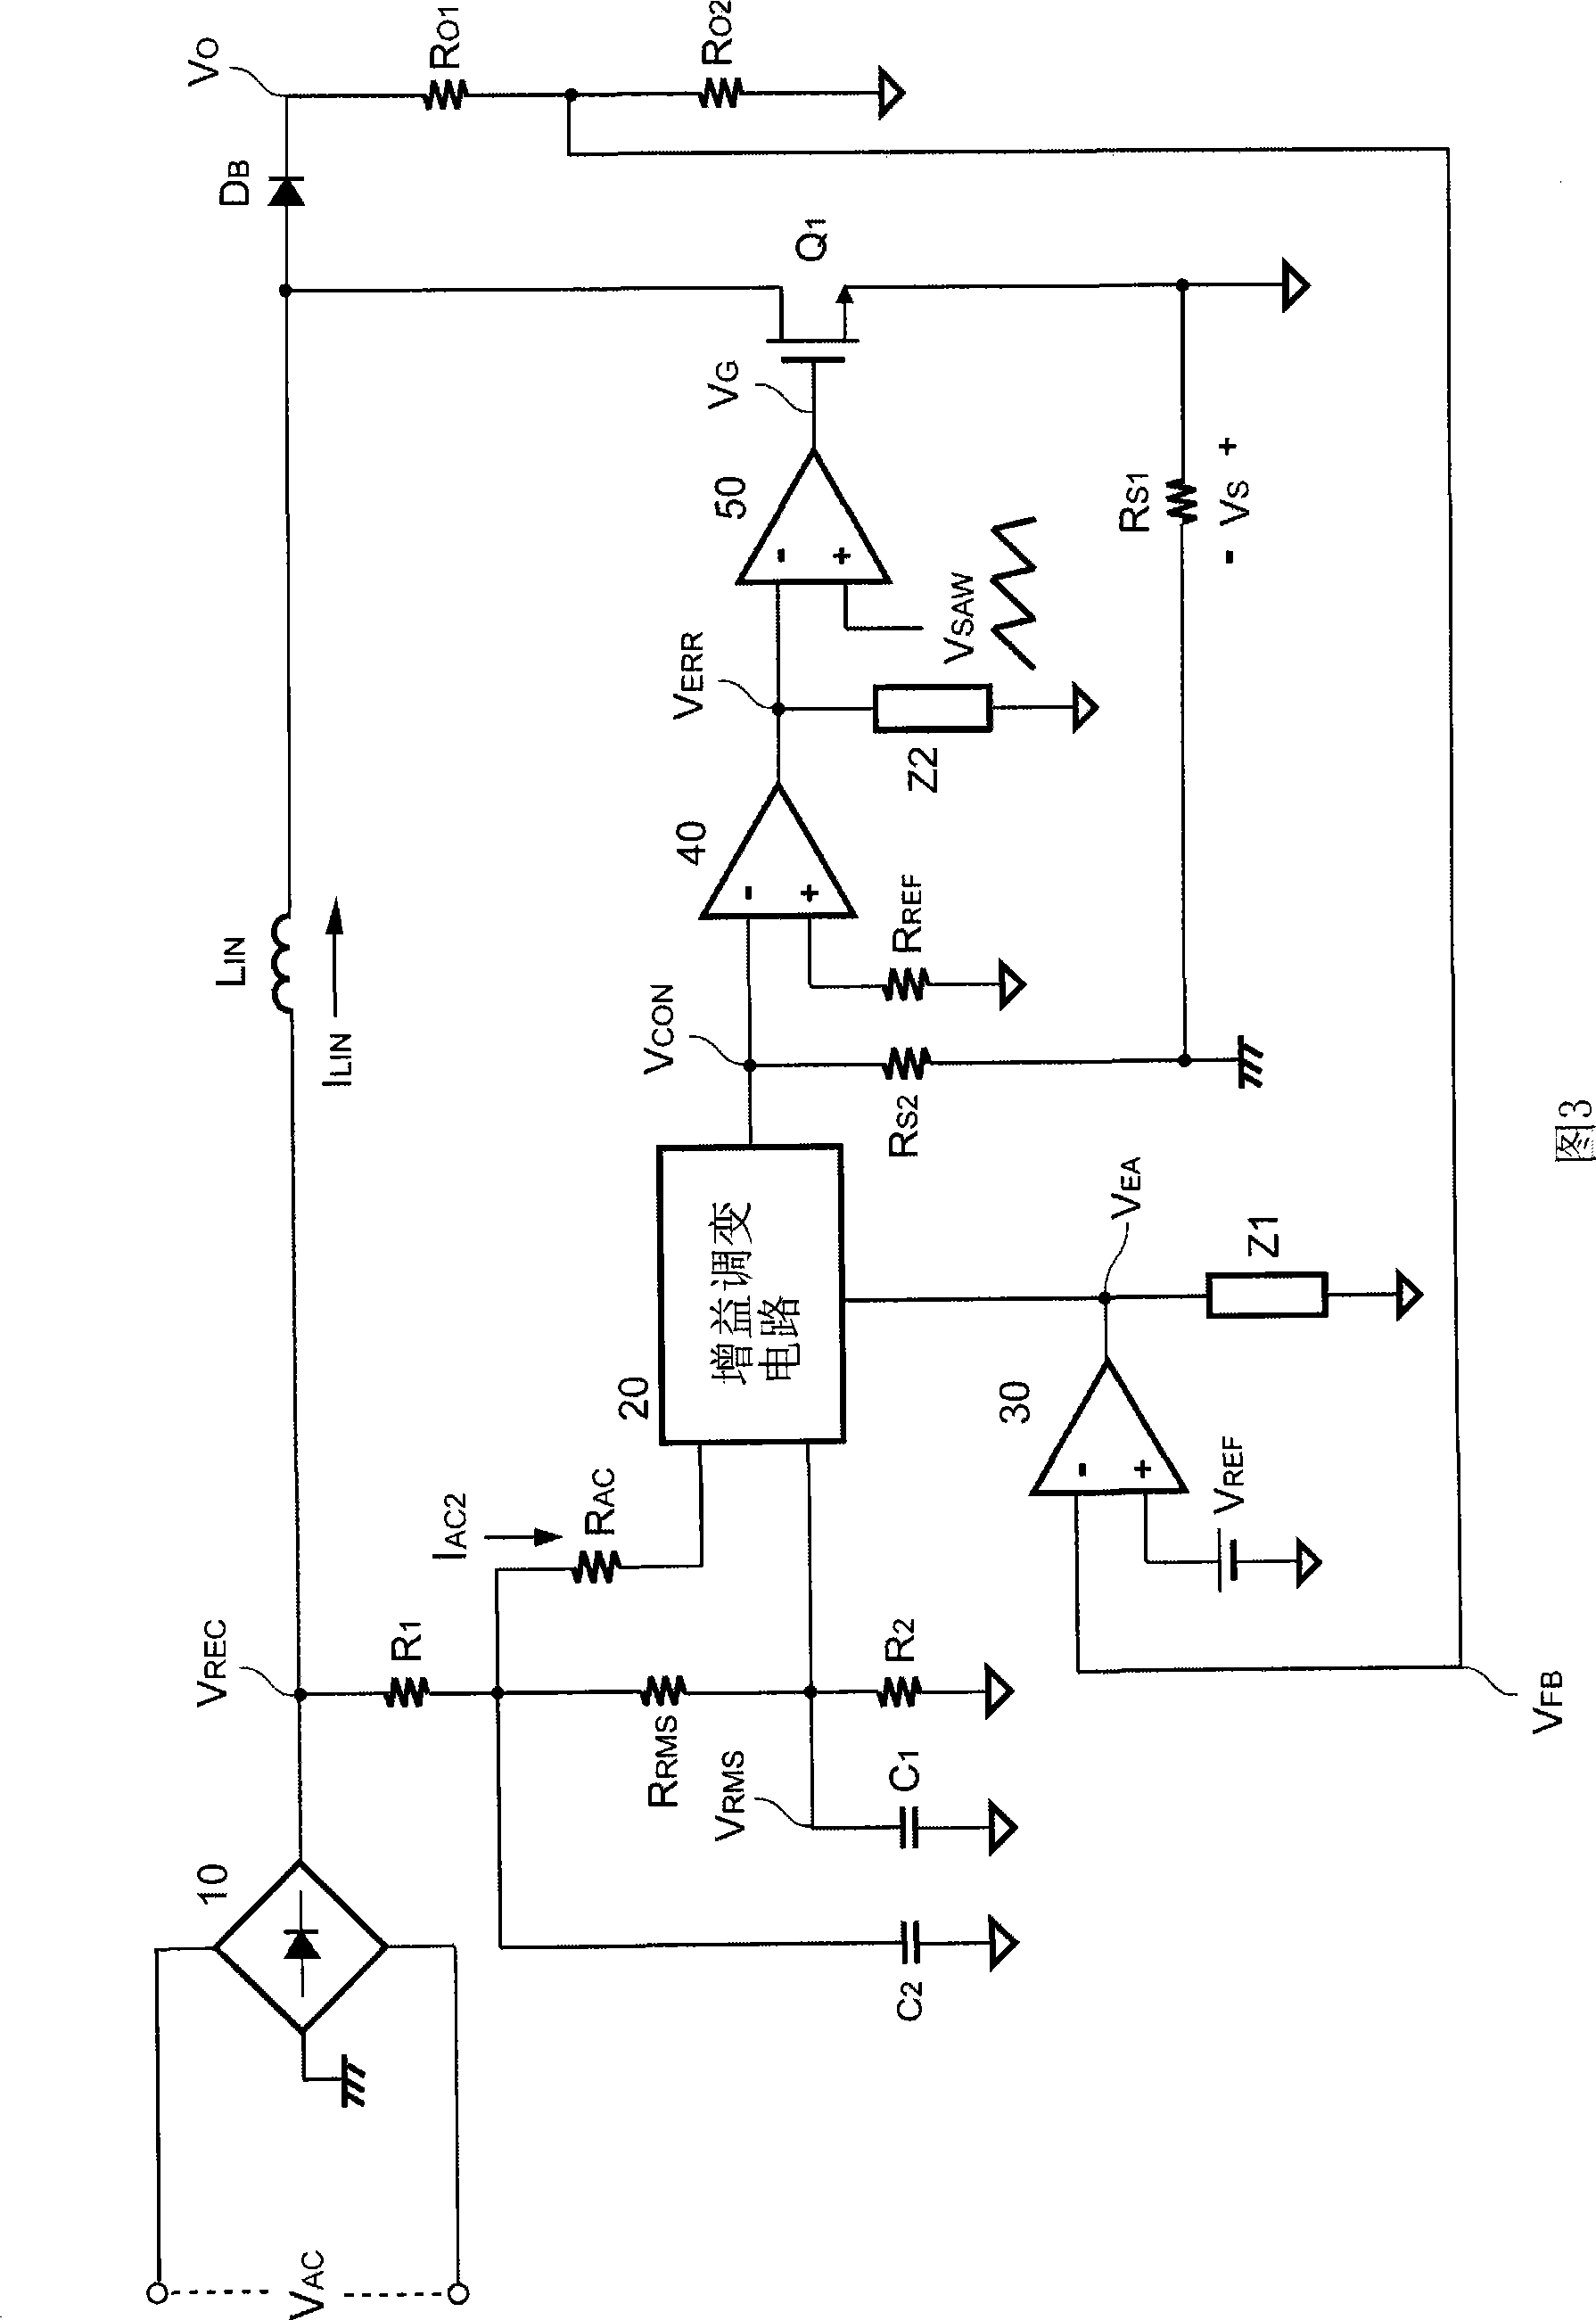 Control circuit for power factor corrector